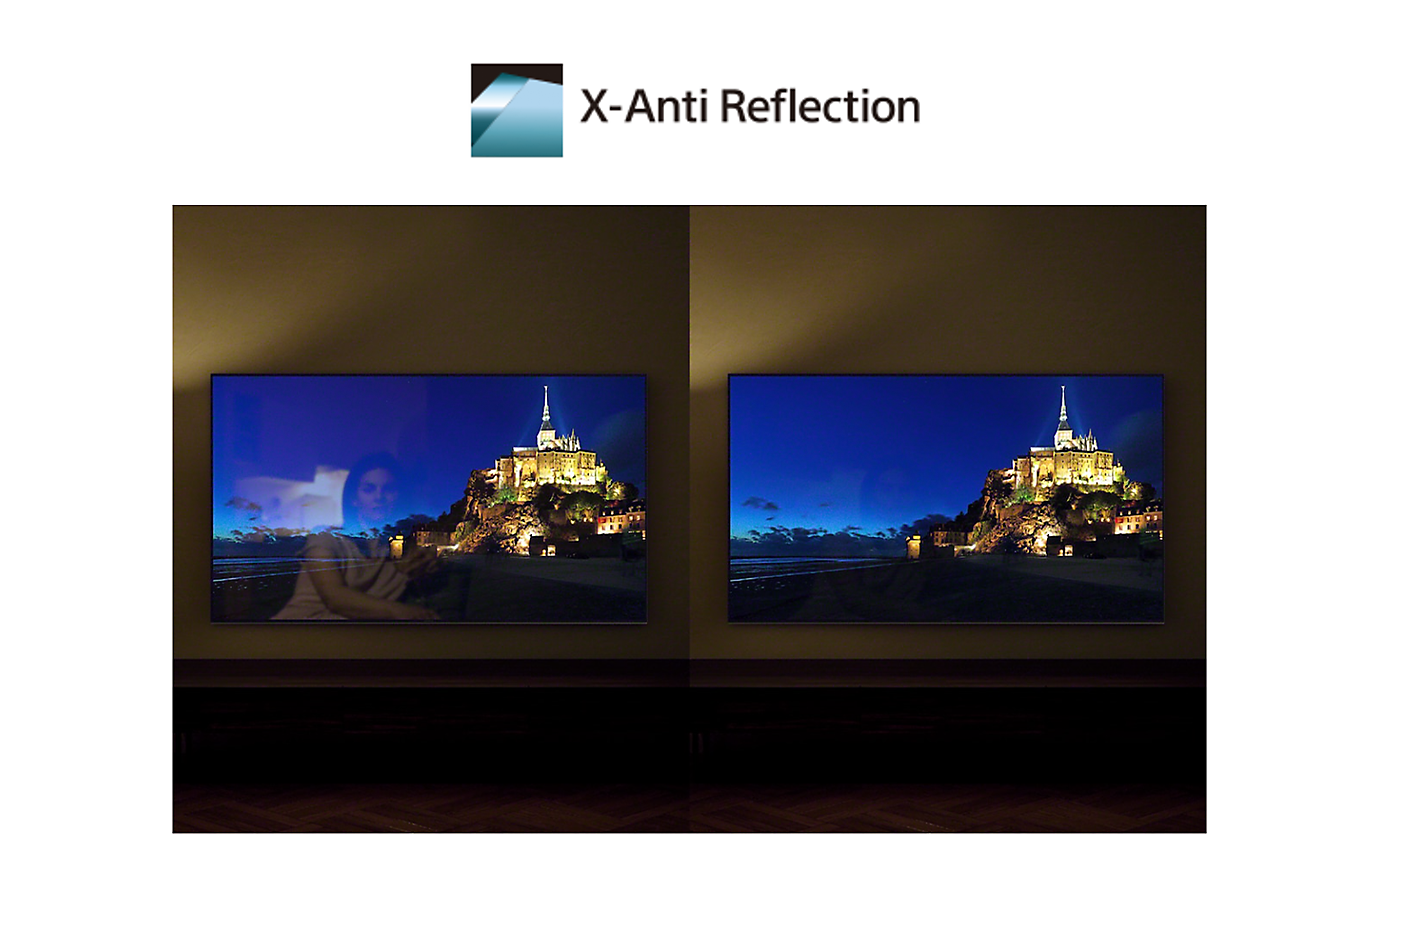 Comparaison d'écran avec et sans technologie X-Anti Reflection